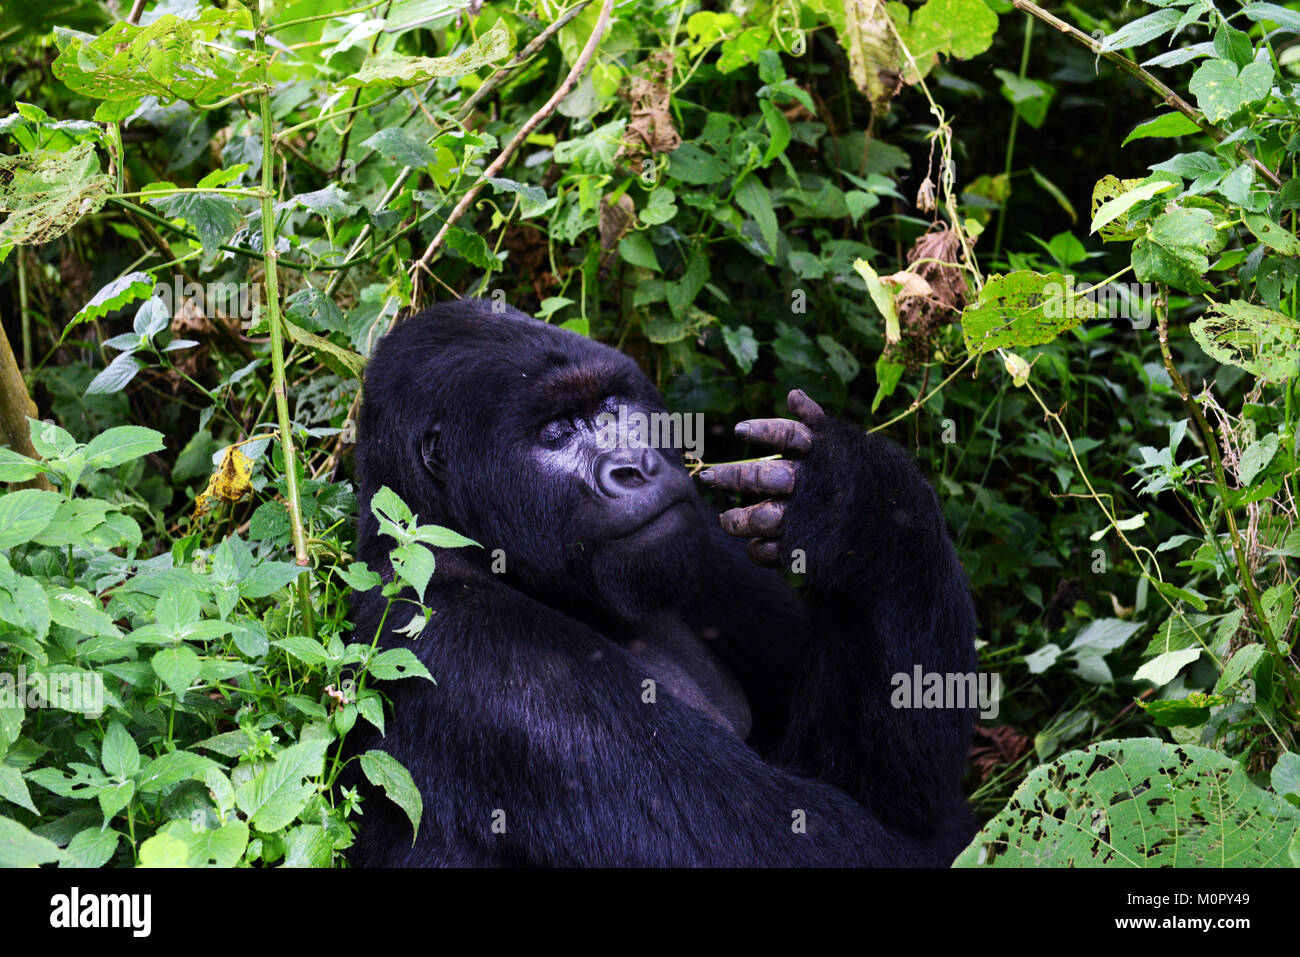 A Mountain Gorilla in Virunga national park, Eastern Congo. Stock Photo